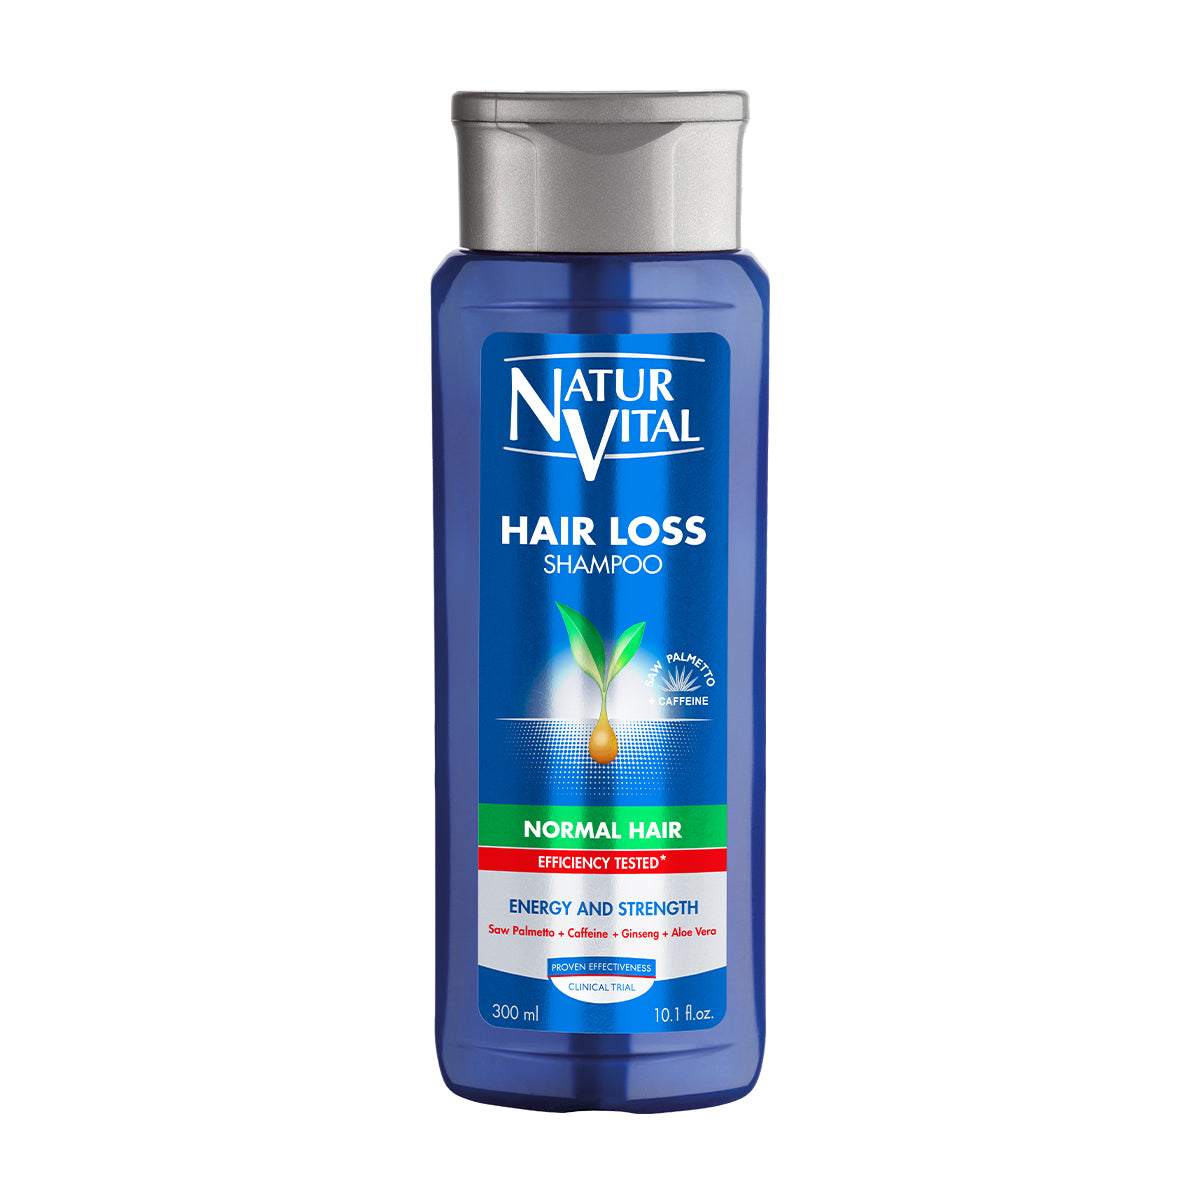 NaturVital Hair Loss Shampoo - Normal Hair